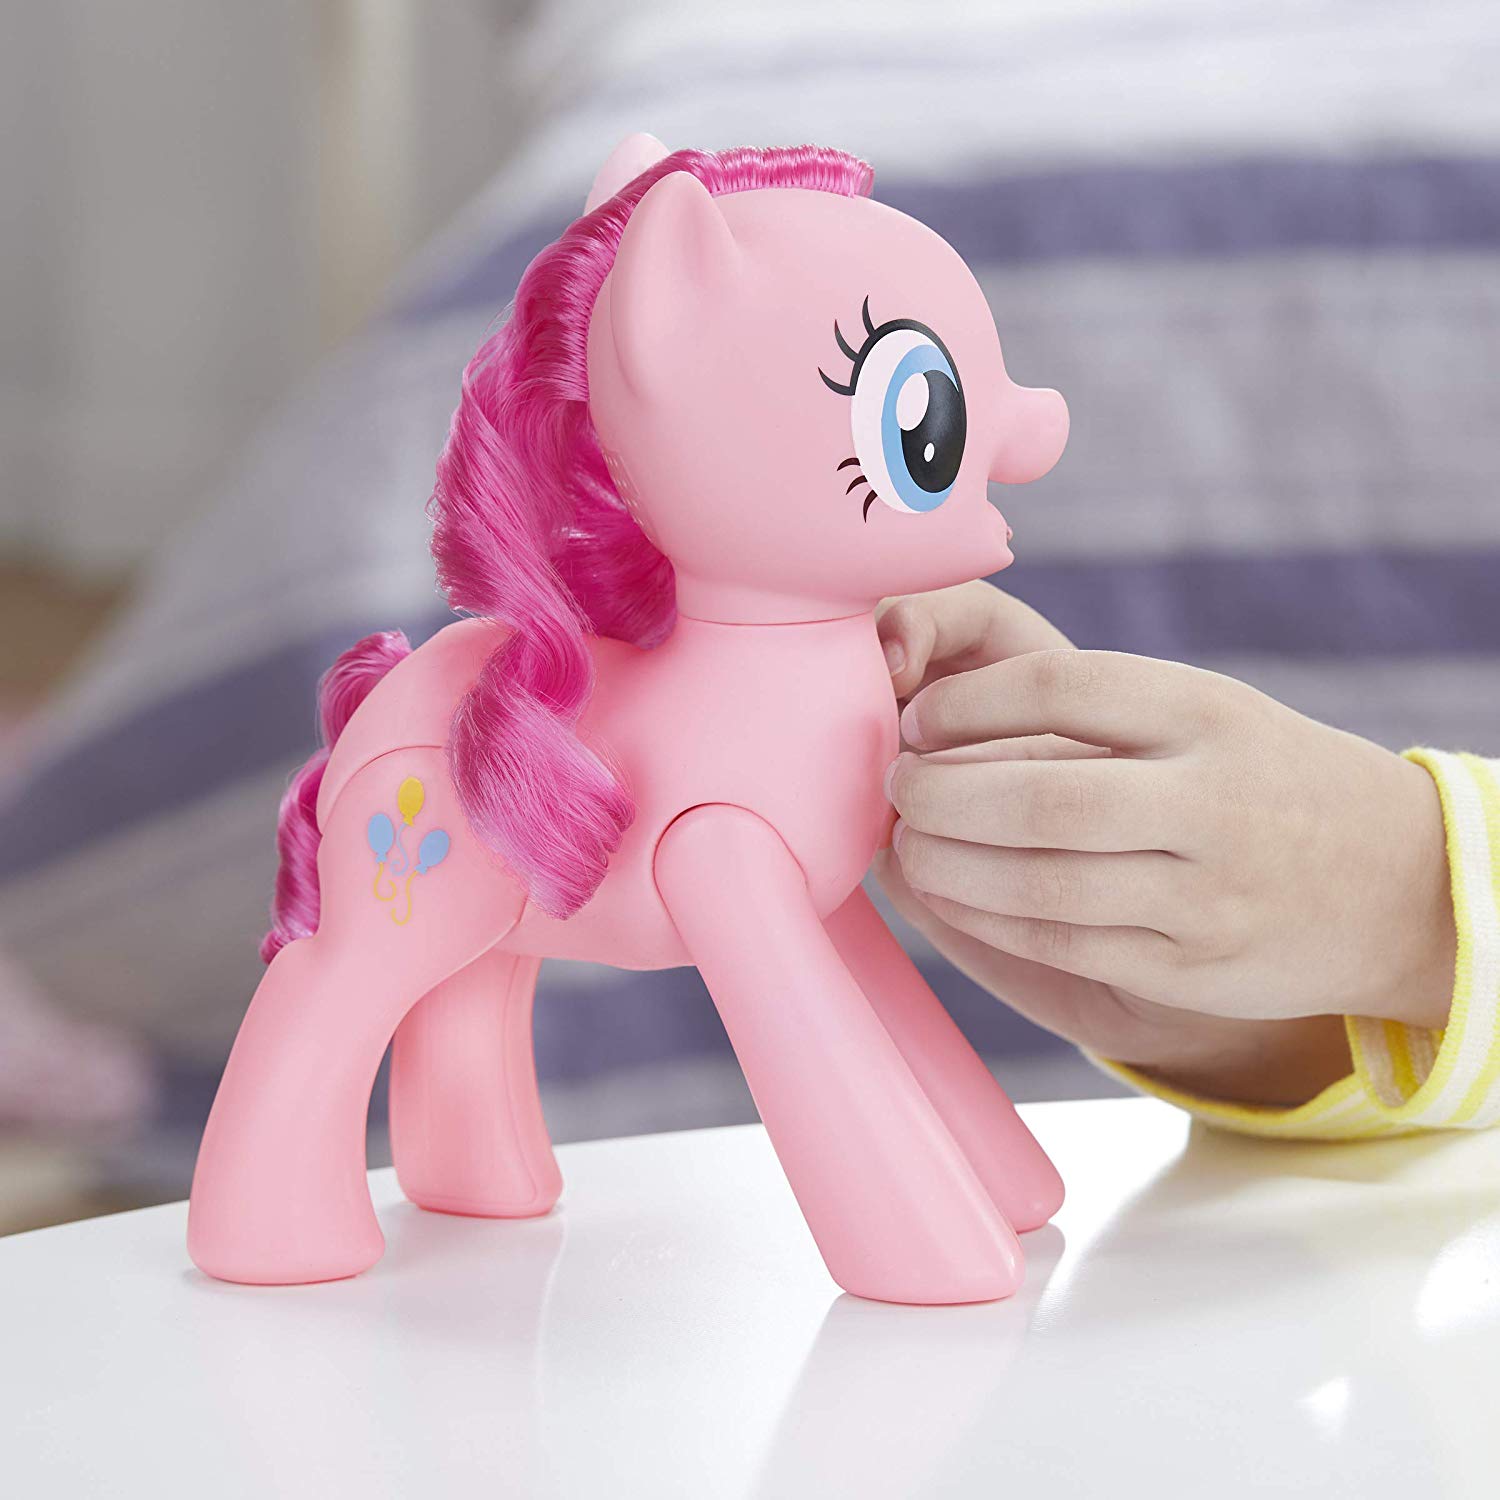 Игрушка пони My little pony - Пинки Пай  